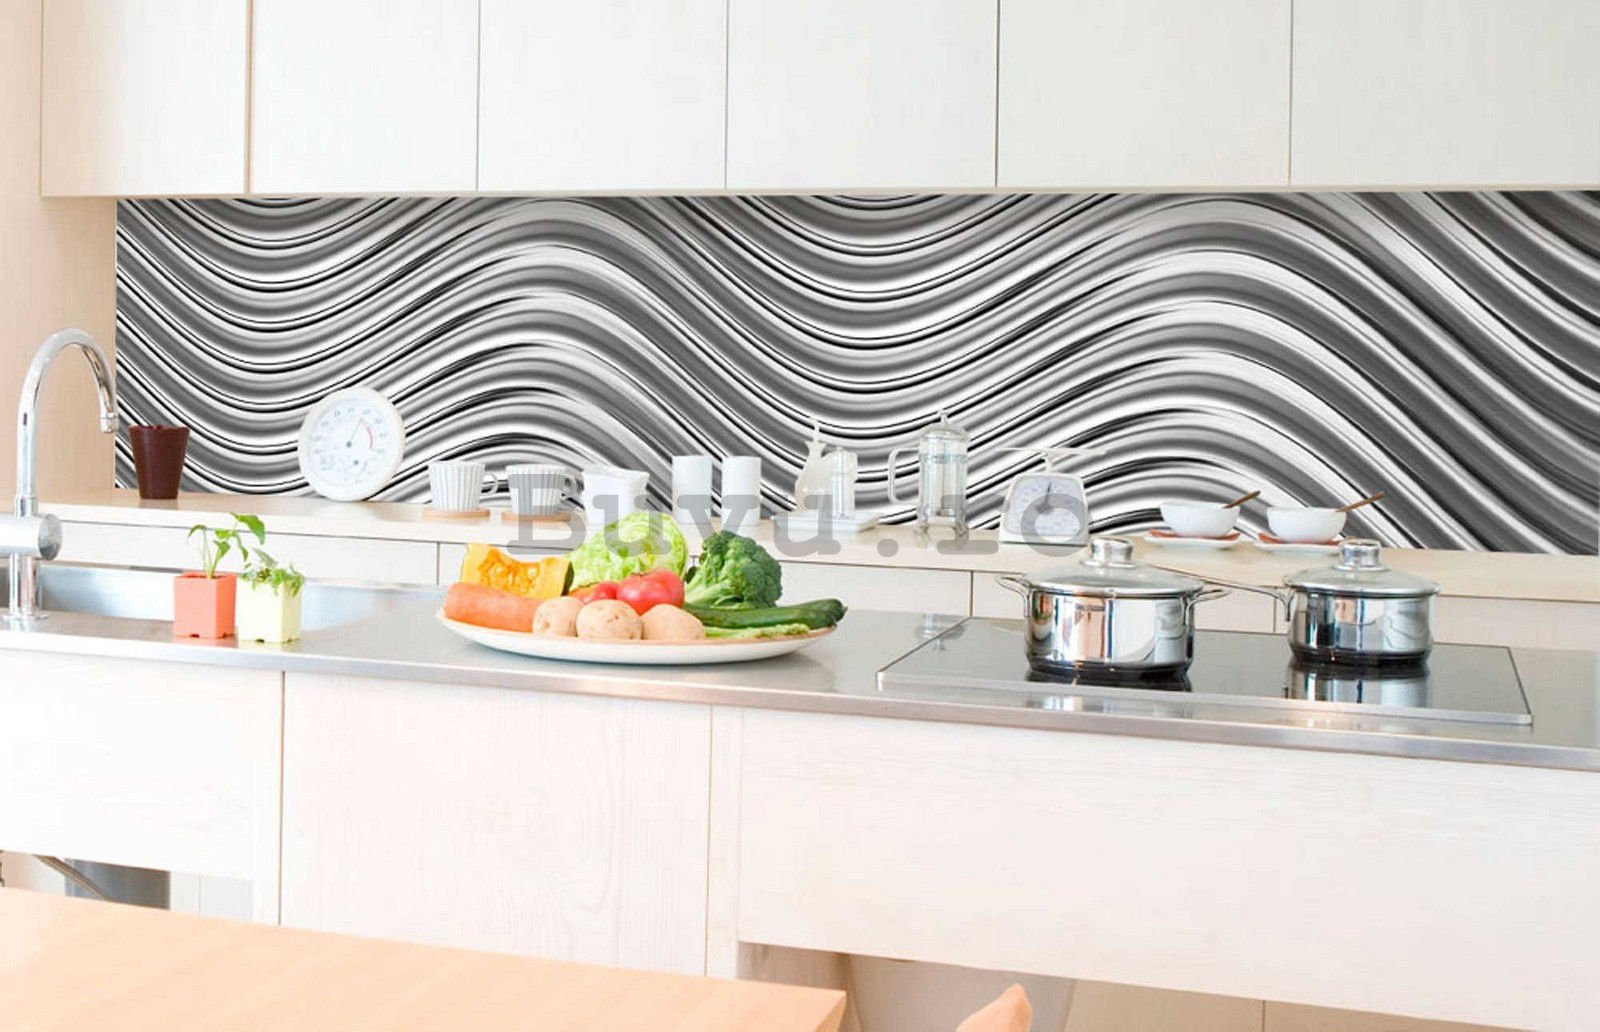 Tapet autoadeziv lavabil pentru bucătărie - Onduri de argint, 350x60 cm